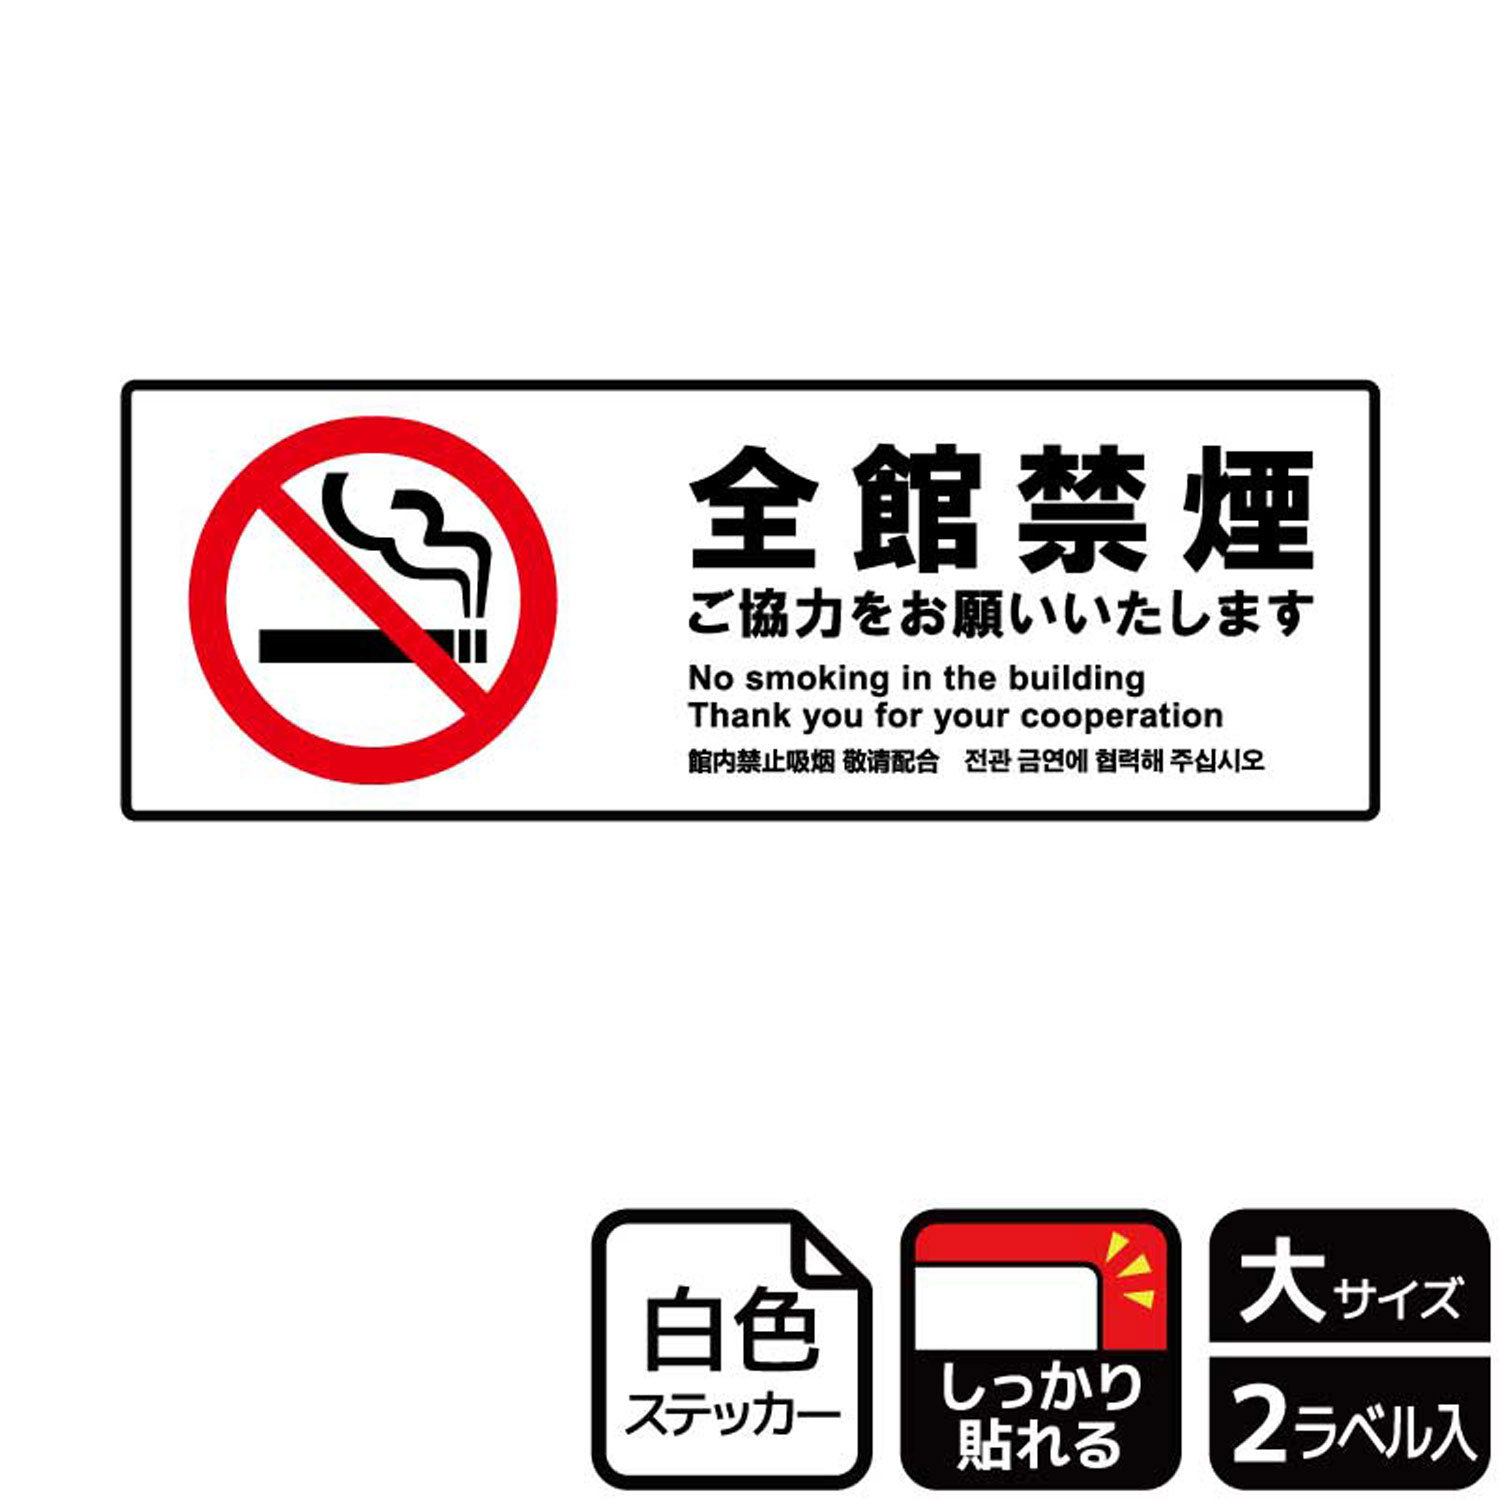 【1組】ステッカー KFK2161 全館禁煙ご協力 2枚入 KALBAS 看板 標識 ステッカー 案内 表示 00349087 プロステ